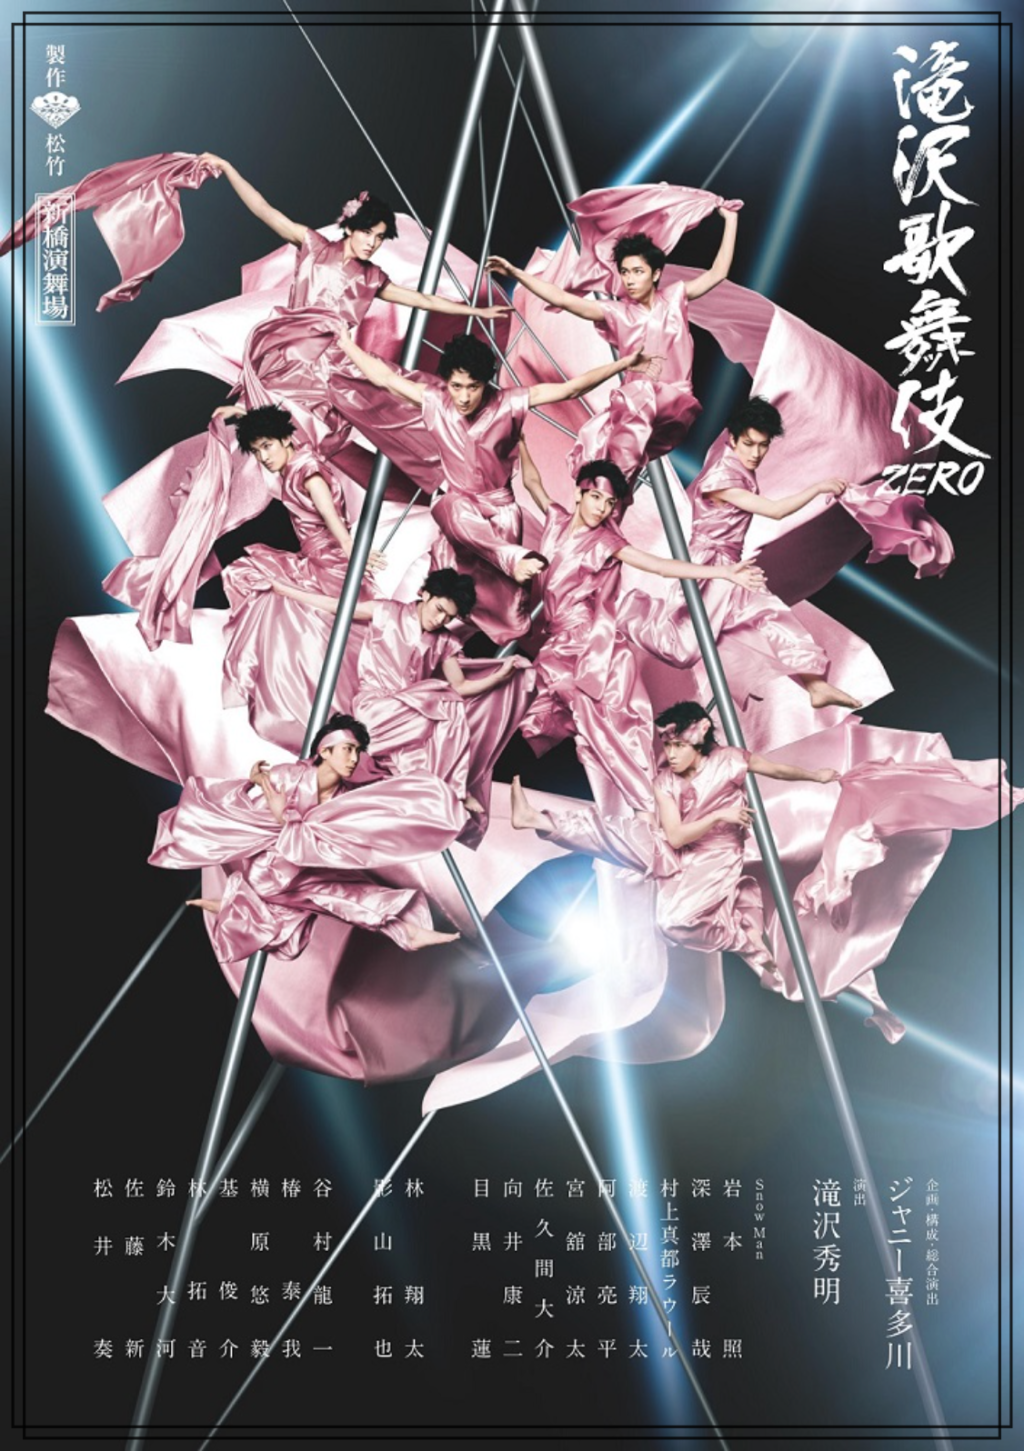 『滝沢歌舞伎ZERO』のポスター